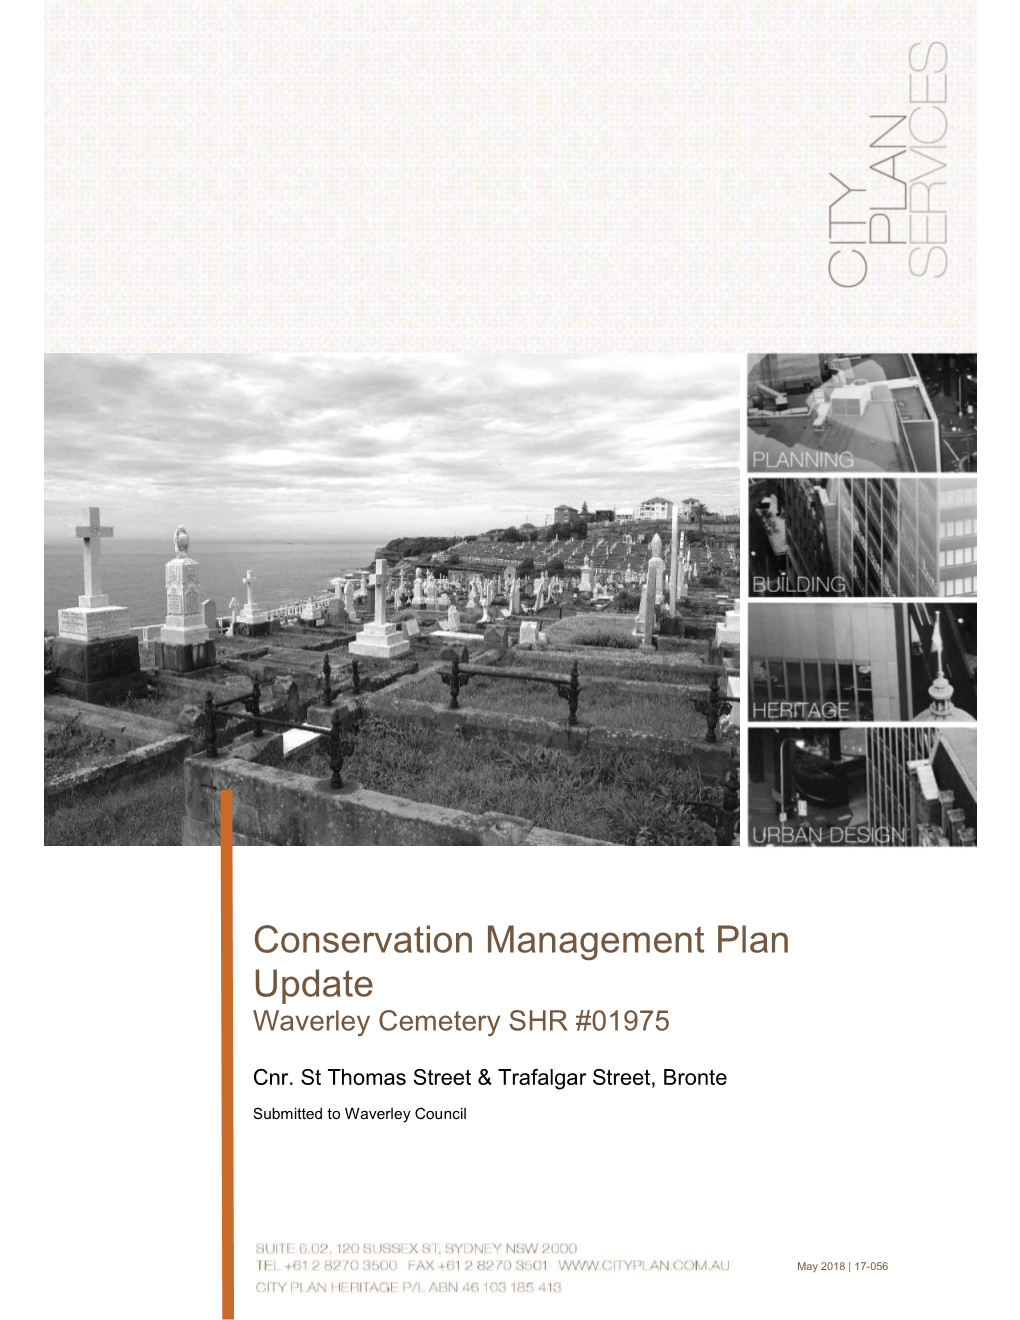 Conservation Management Plan Update Waverley Cemetery SHR #01975